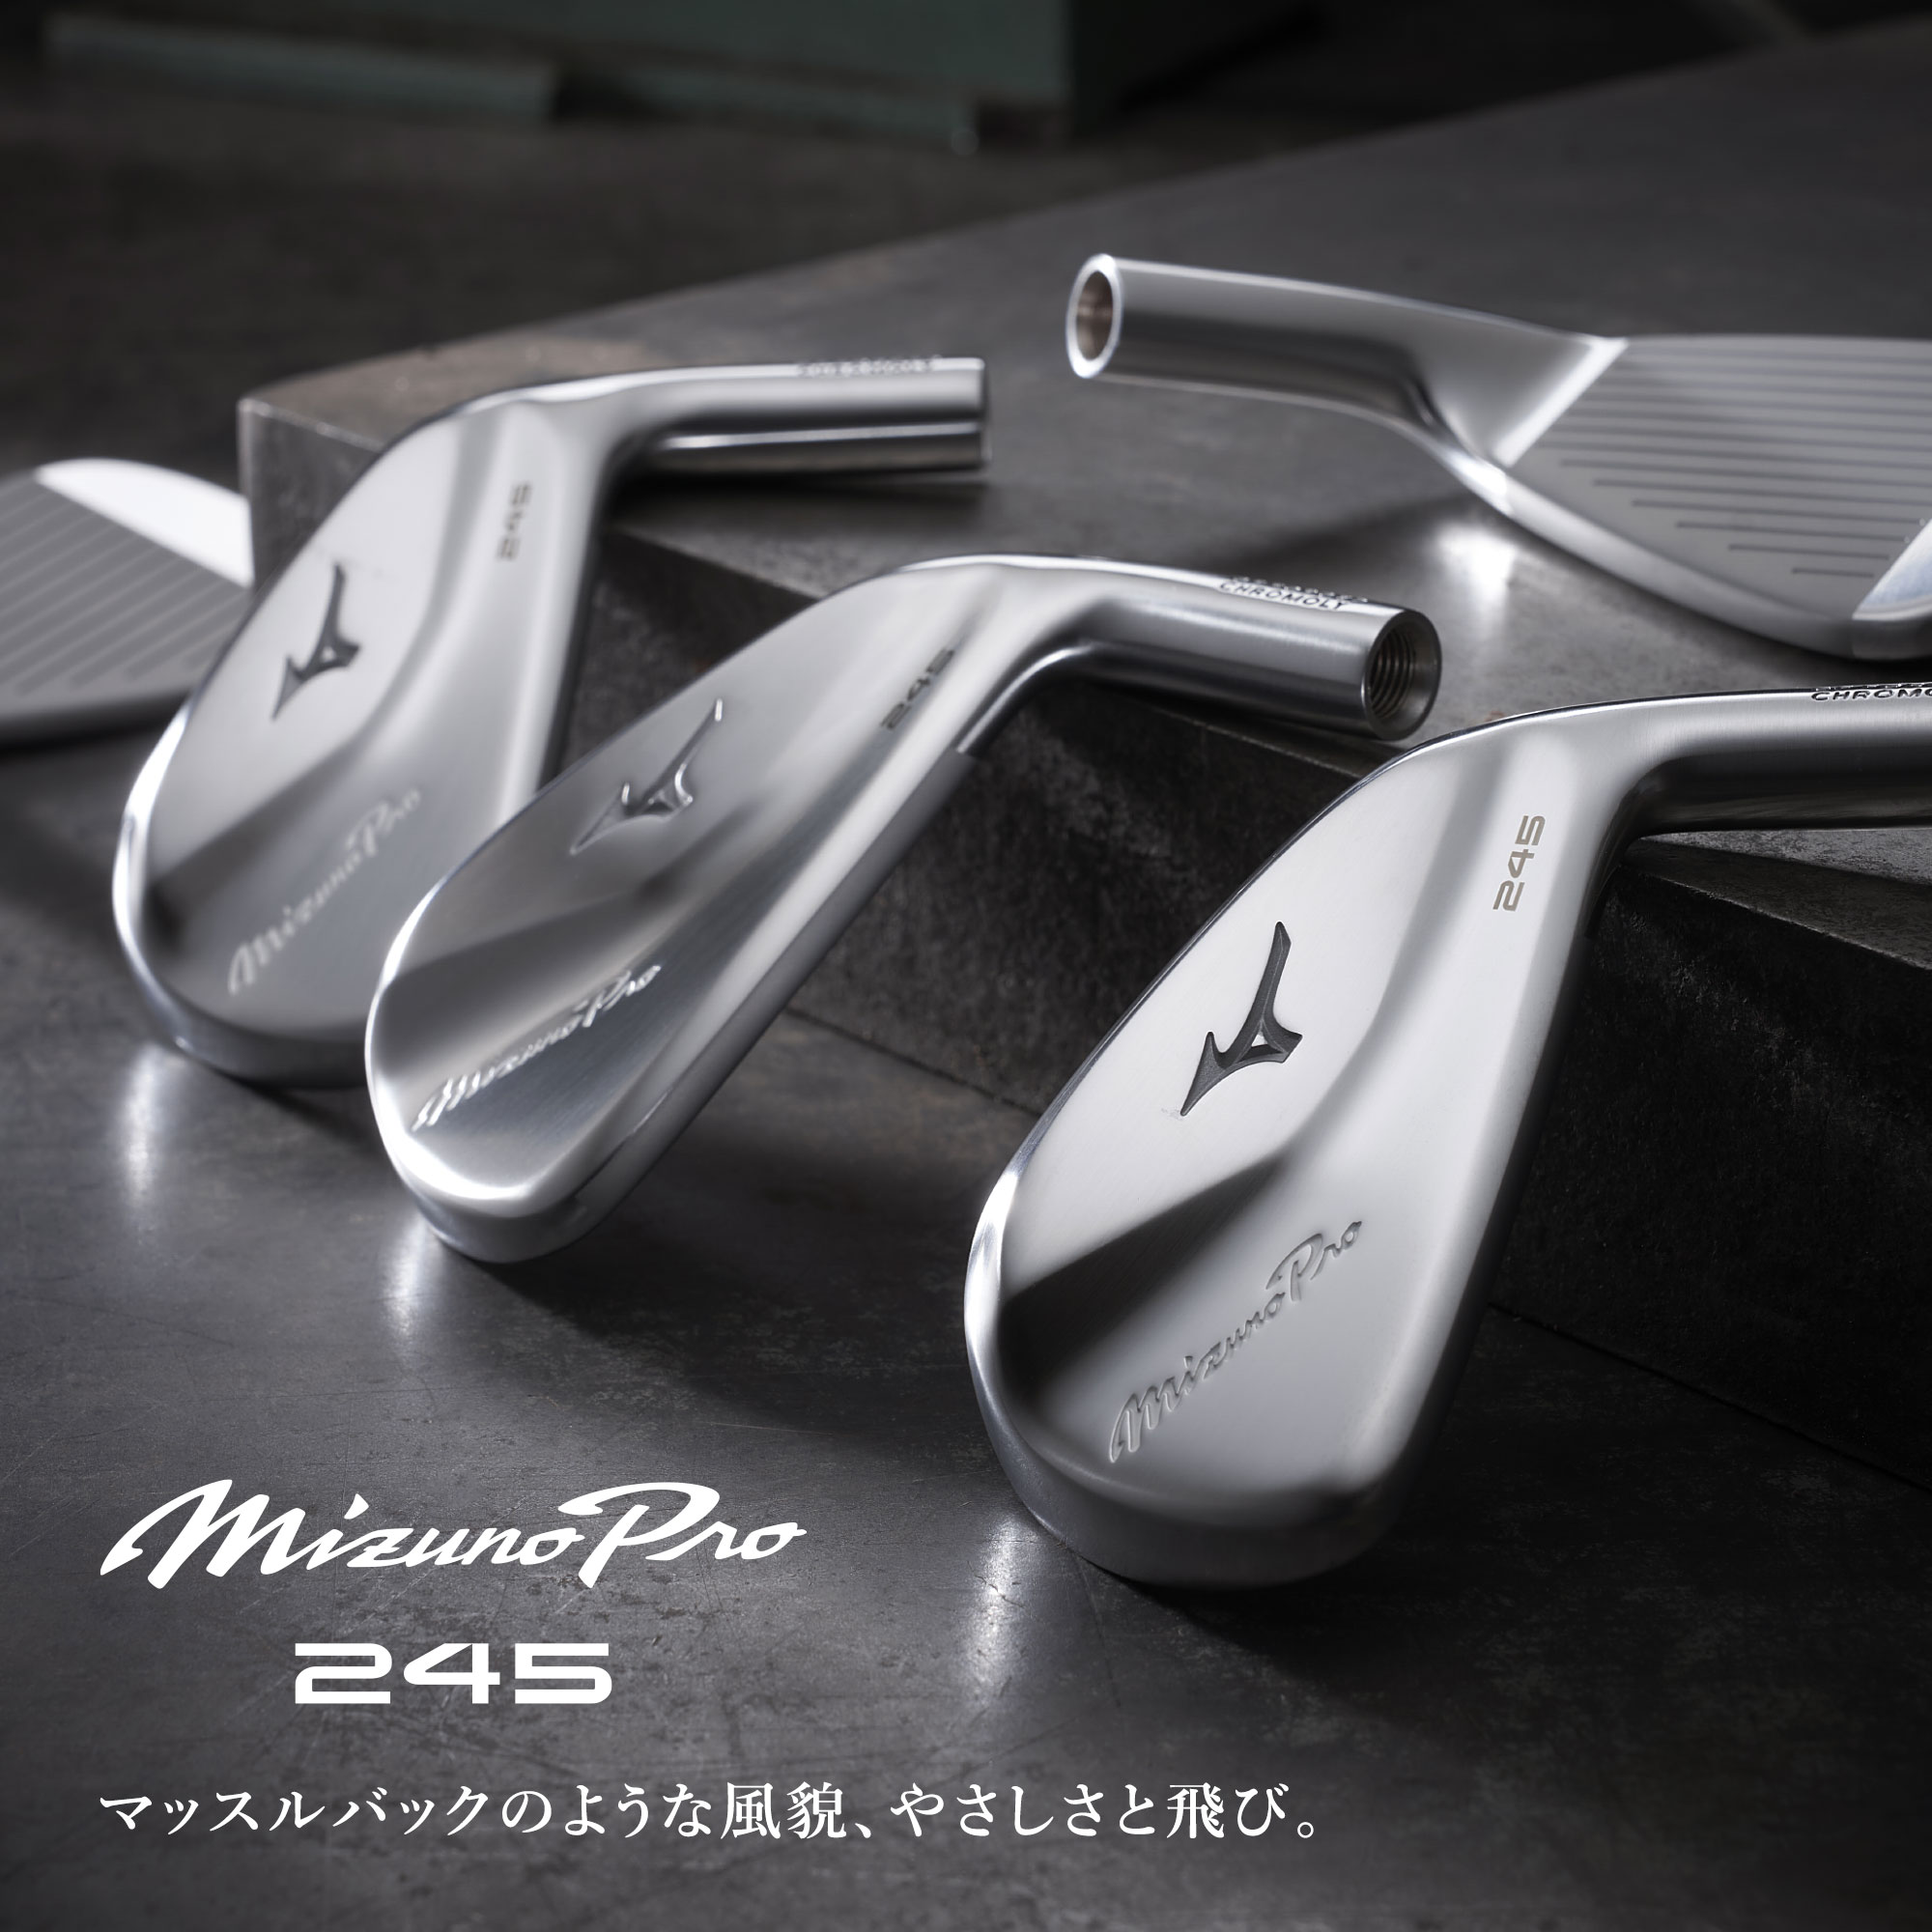 Mizuno Pro 245 アイアン 単品(No.4、GW)(N.S.PRO MODUS3 TOUR105  スチールシャフト付)|5KJXB33370|クラブ|ゴルフ|ミズノ公式オンライン